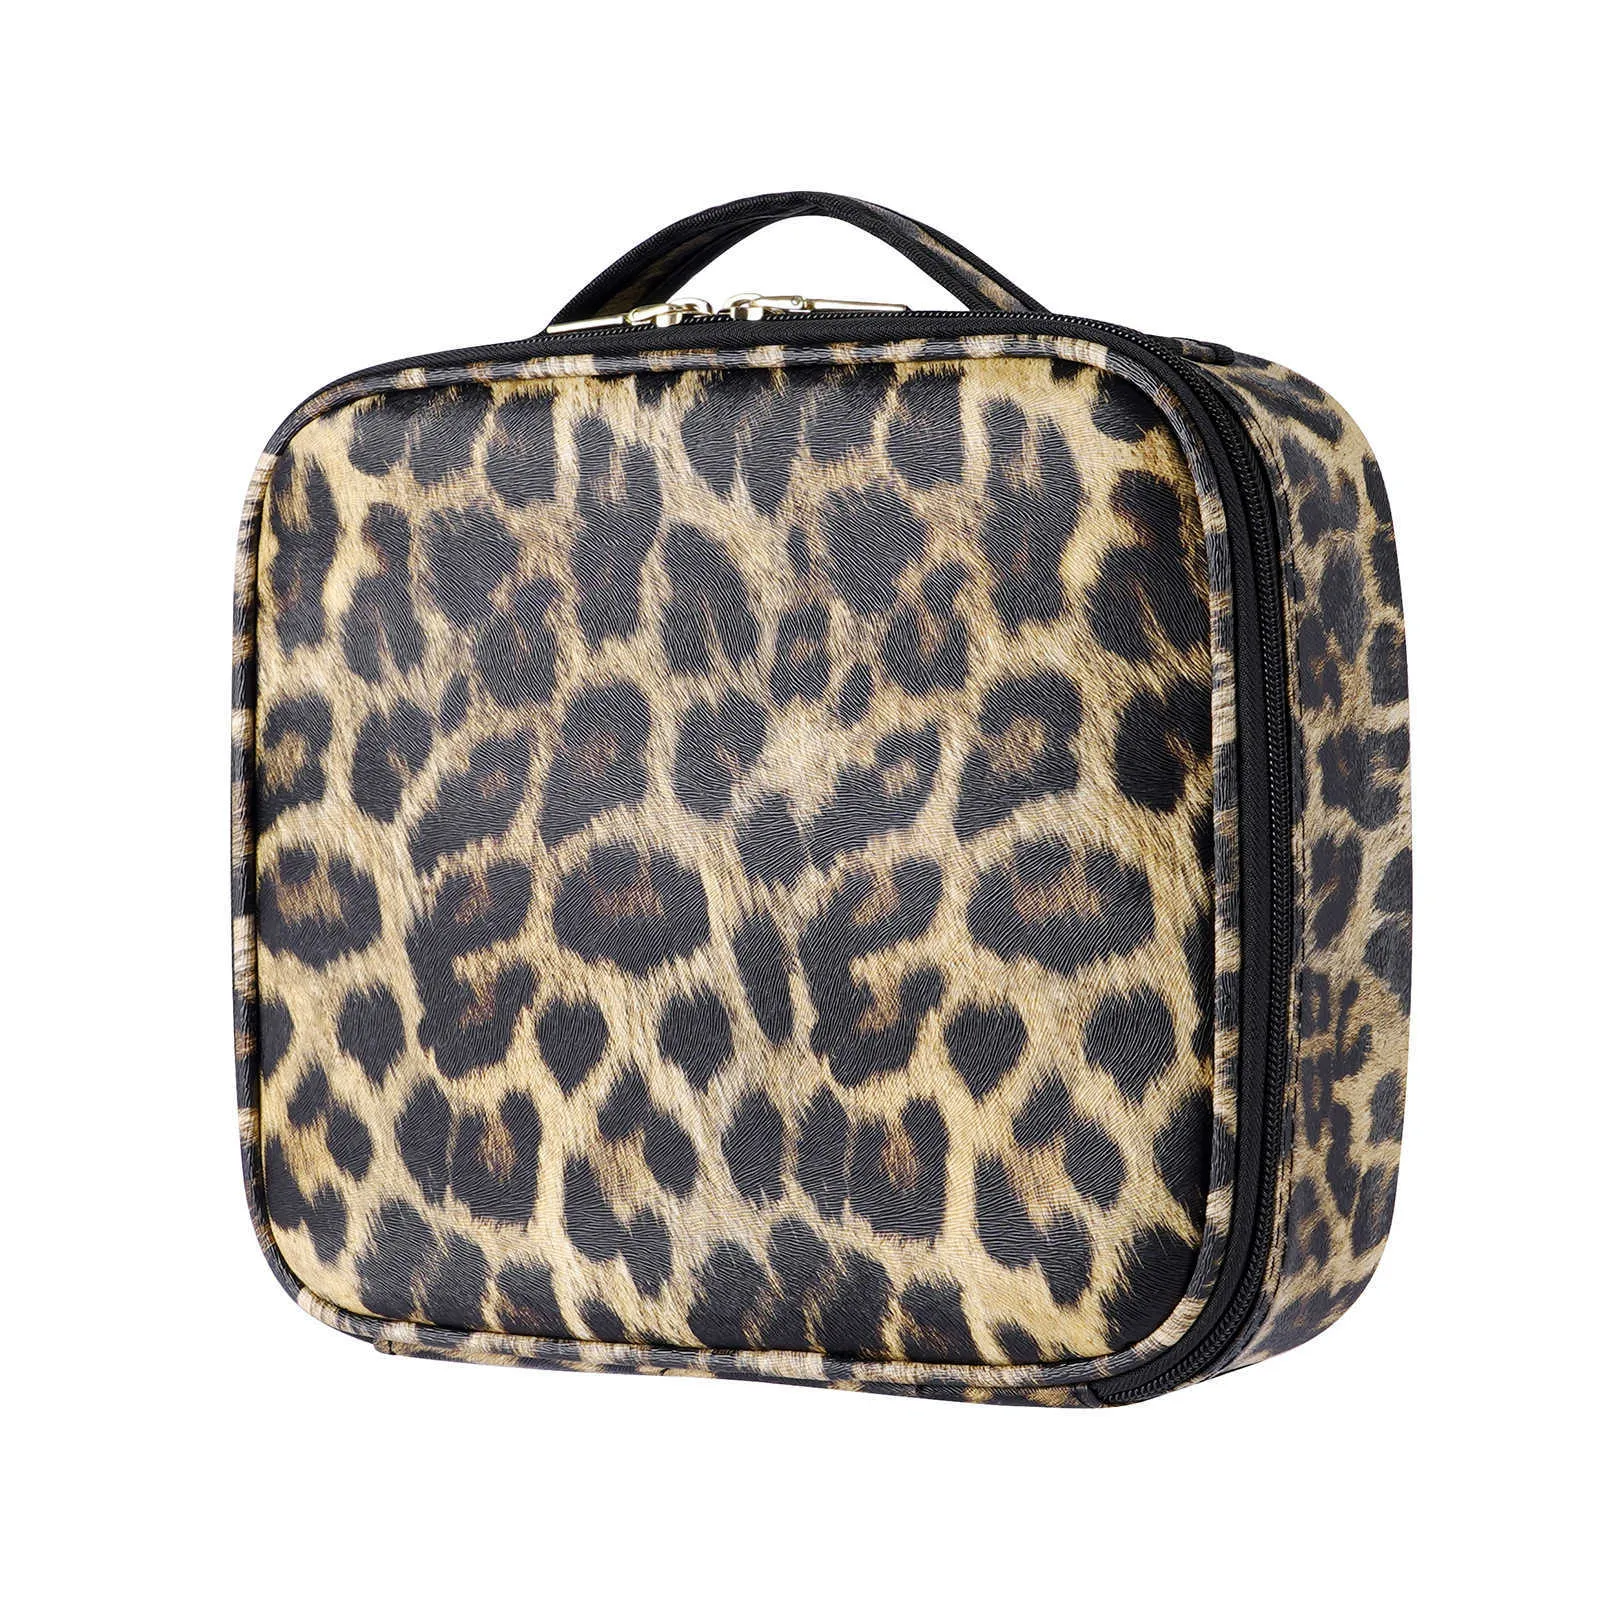 Kosmetiska väskor fall leopard tryckpartition kosmetisk låda stor kapacitet dubbel lager bärbar skönhet broderi verktyg lagring väska 230113